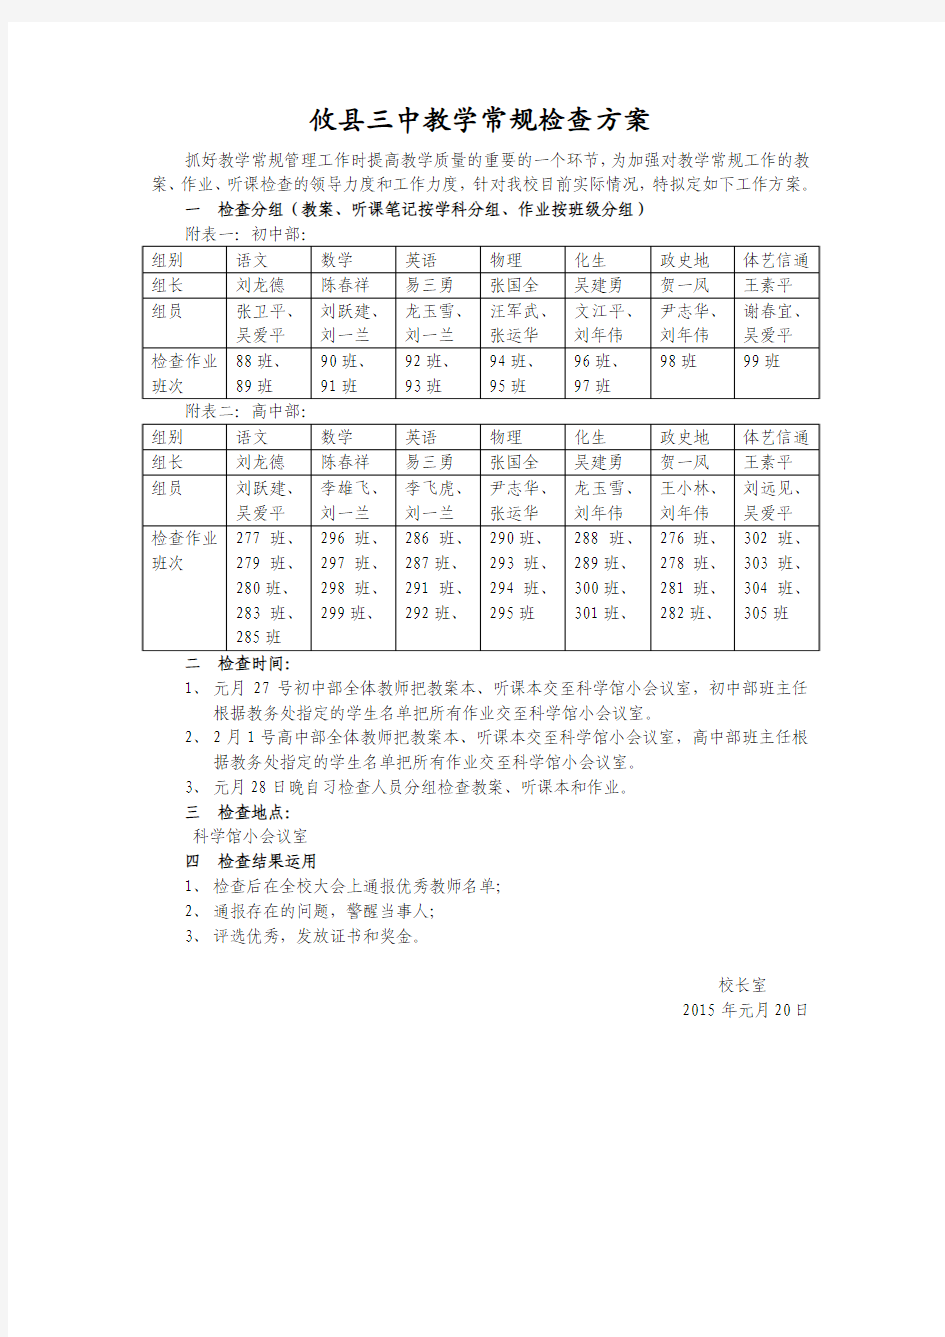 攸县三中教学常规检查方案(2015.1.20)